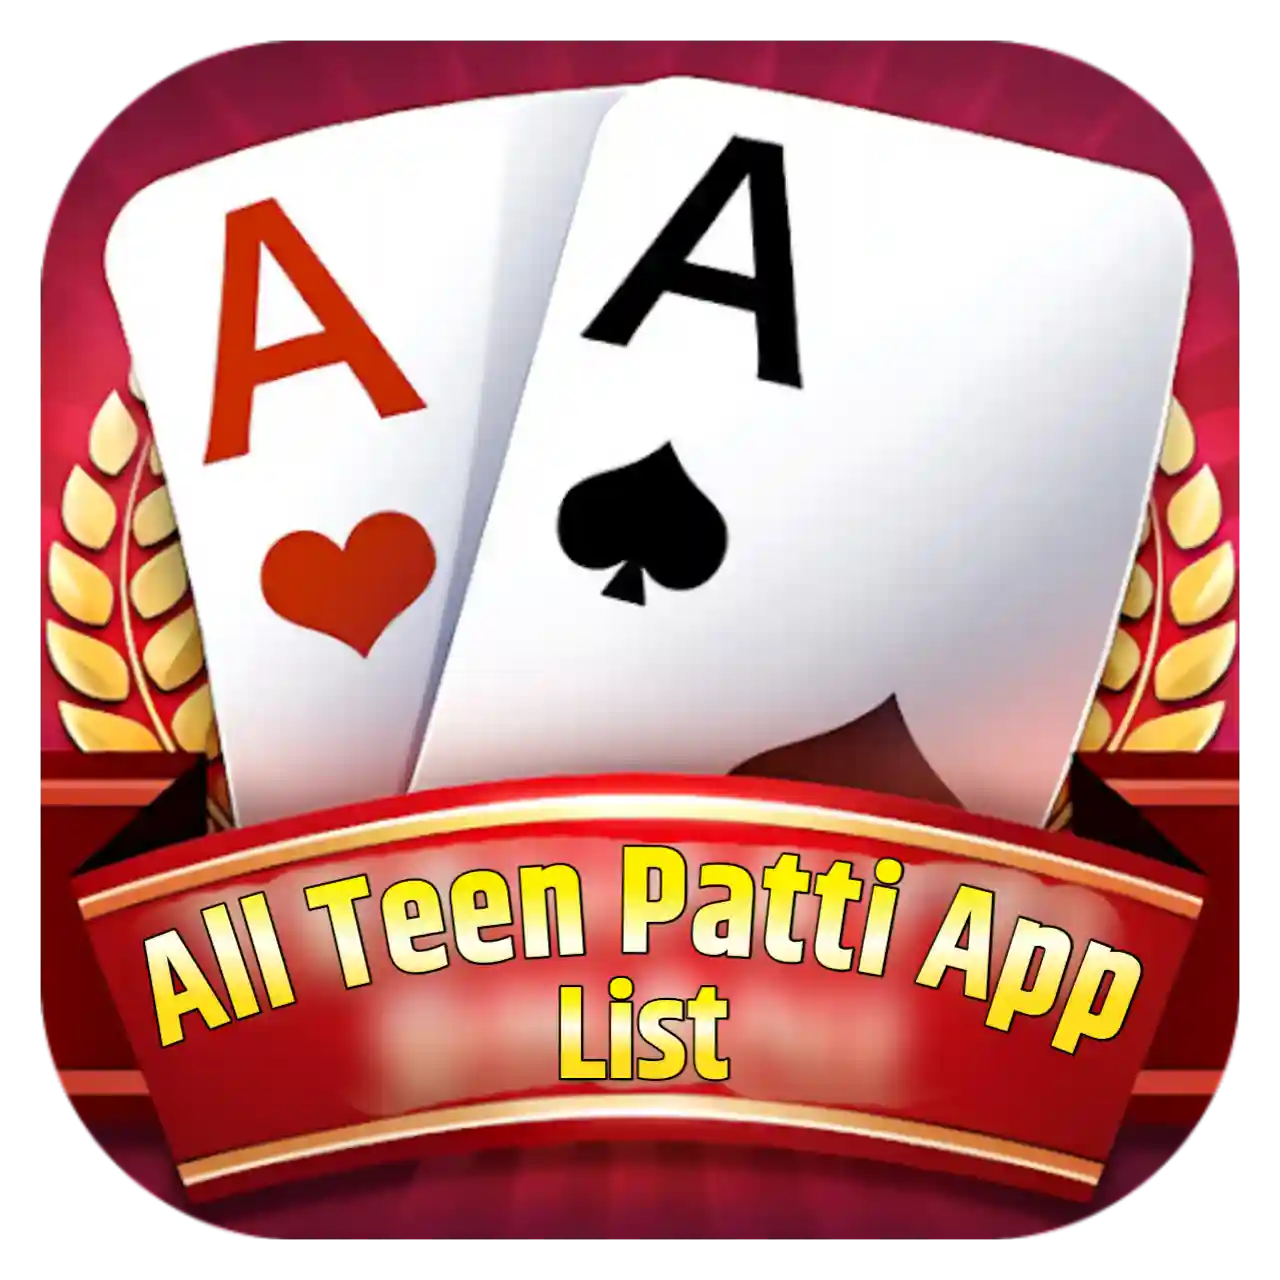 All Teen Patti Apk List - All Teen Patti App List 41 Bonus